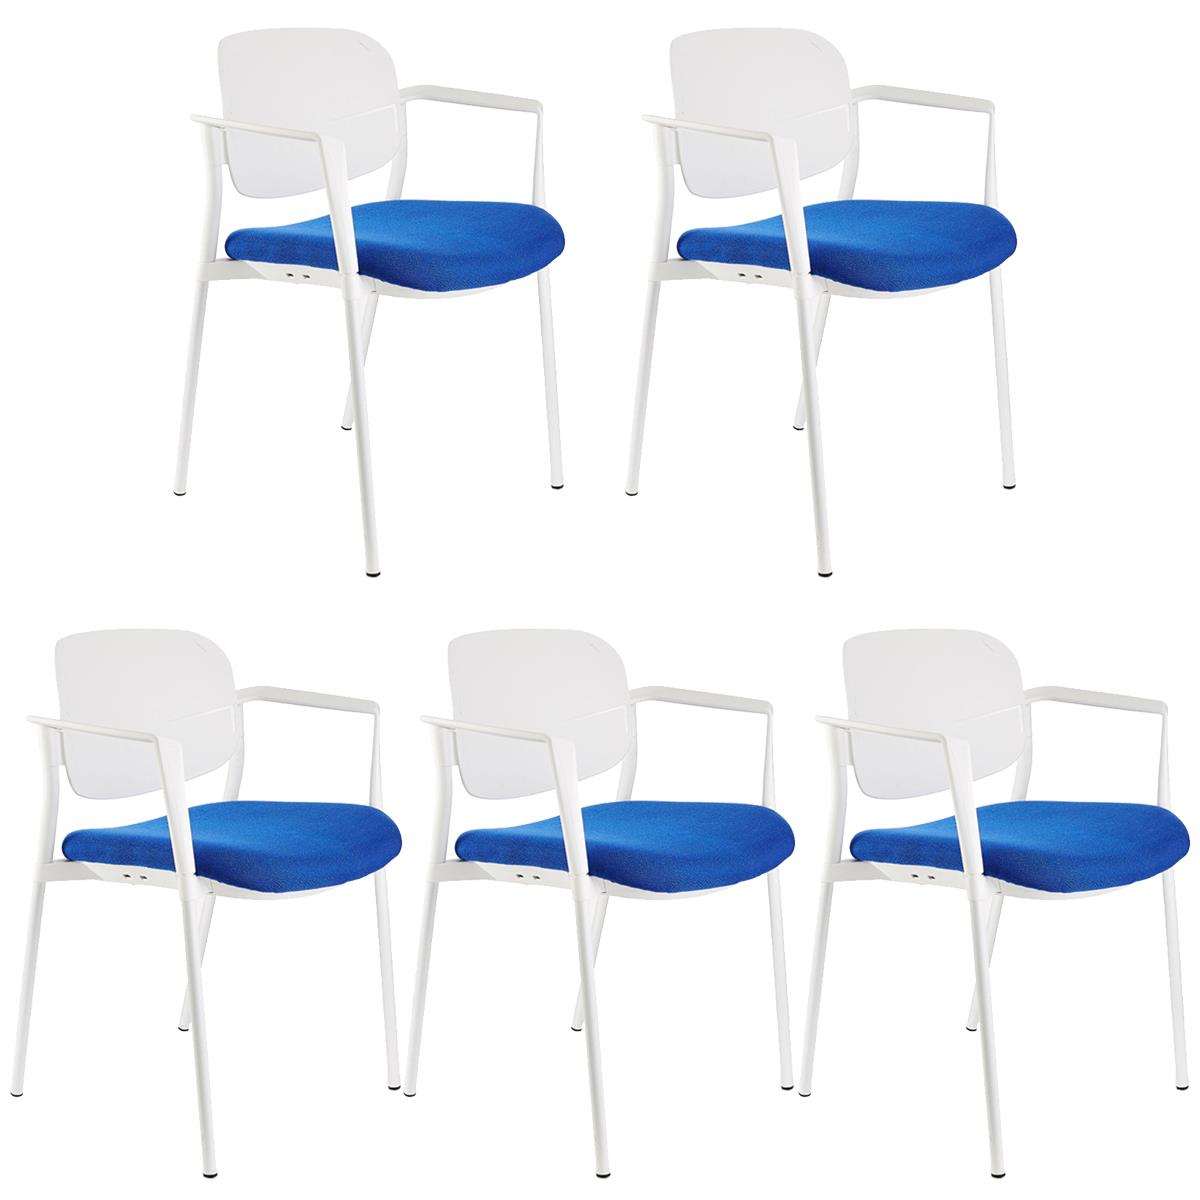 Lote 5 Cadeiras de Visita ERIC COM BRAÇOS, Confortável e Empilhável, Cor Azul